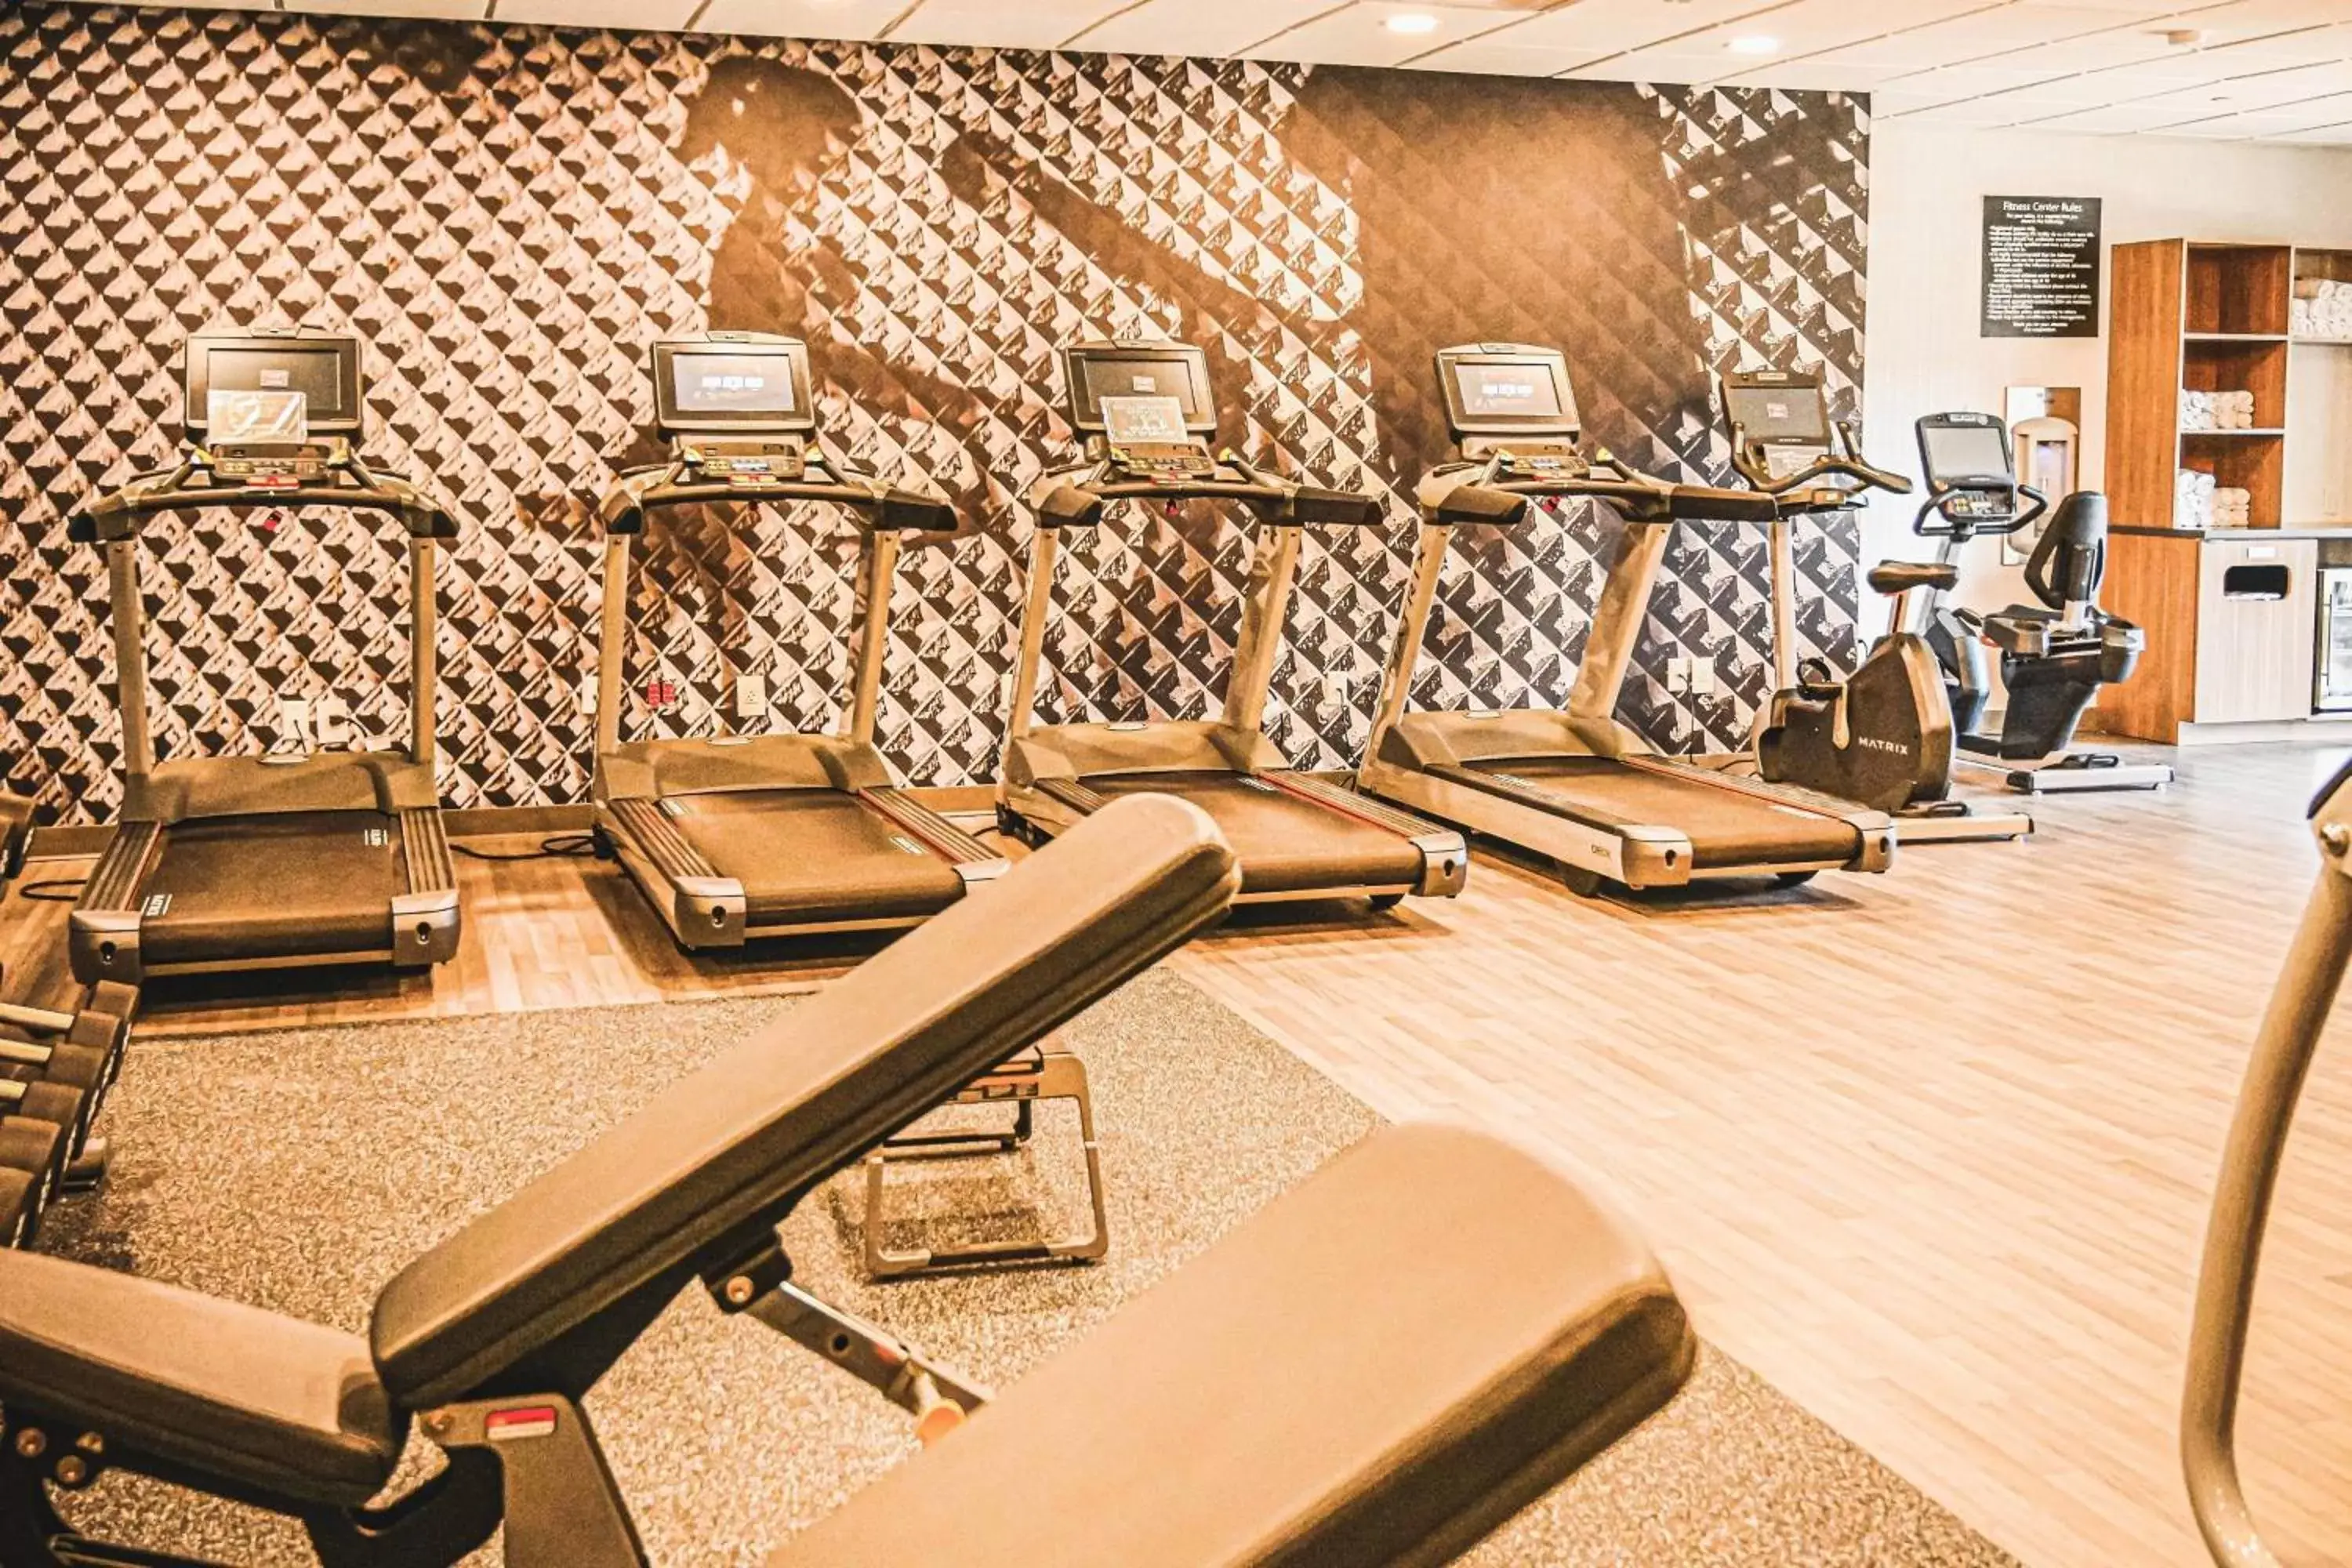 Fitness centre/facilities, Fitness Center/Facilities in Delta Hotels by Marriott Cincinnati Sharonville